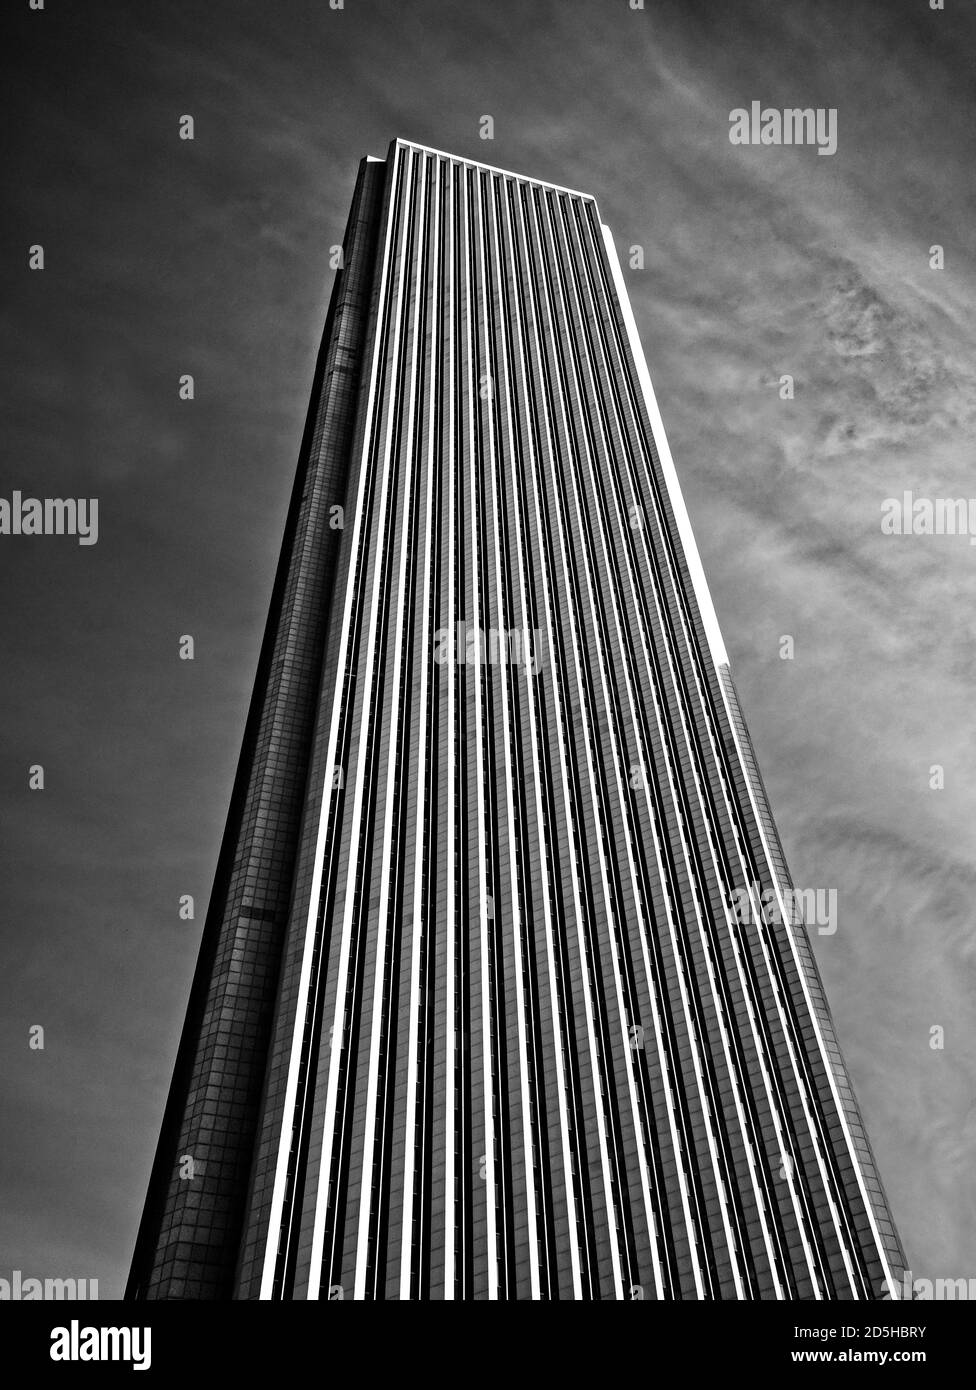 Eine imposante Aussicht auf den atemberaubenden Aon Center Wolkenkratzer in Chicago in Schwarz und Weiß. Stockfoto